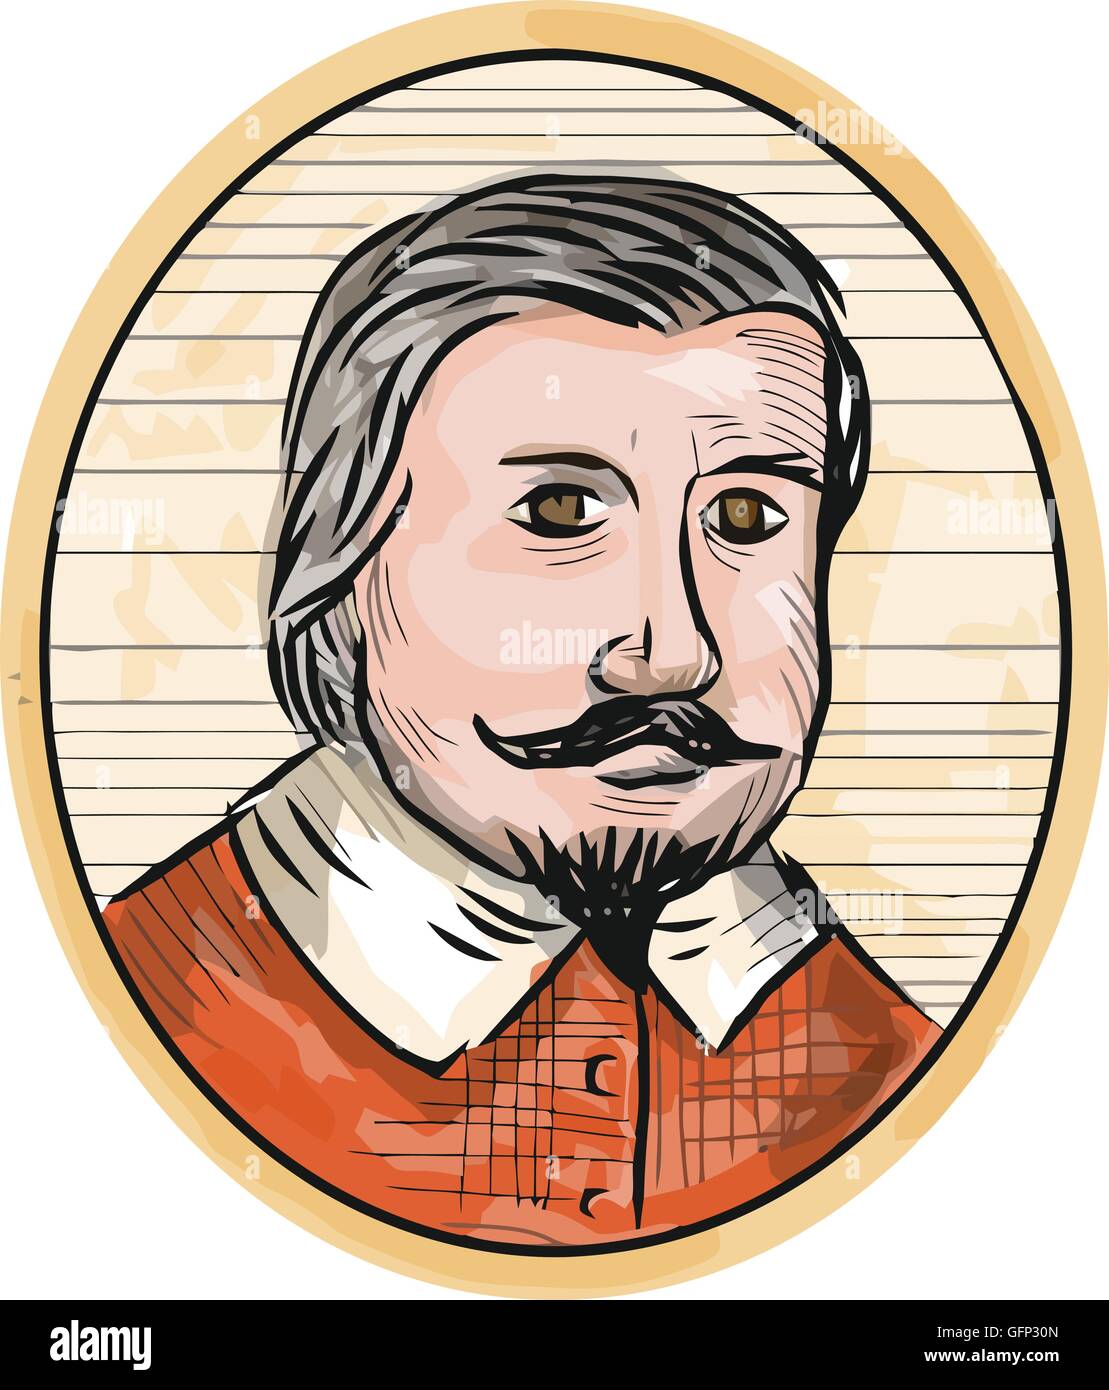 Darstellung eines mittelalterlichen adeligen Herren mit Bart und Schnurrbart mit Blick auf die vordere Reihe in ovaler Form in Retro-Holzschnitt Stil getan. Stock Vektor